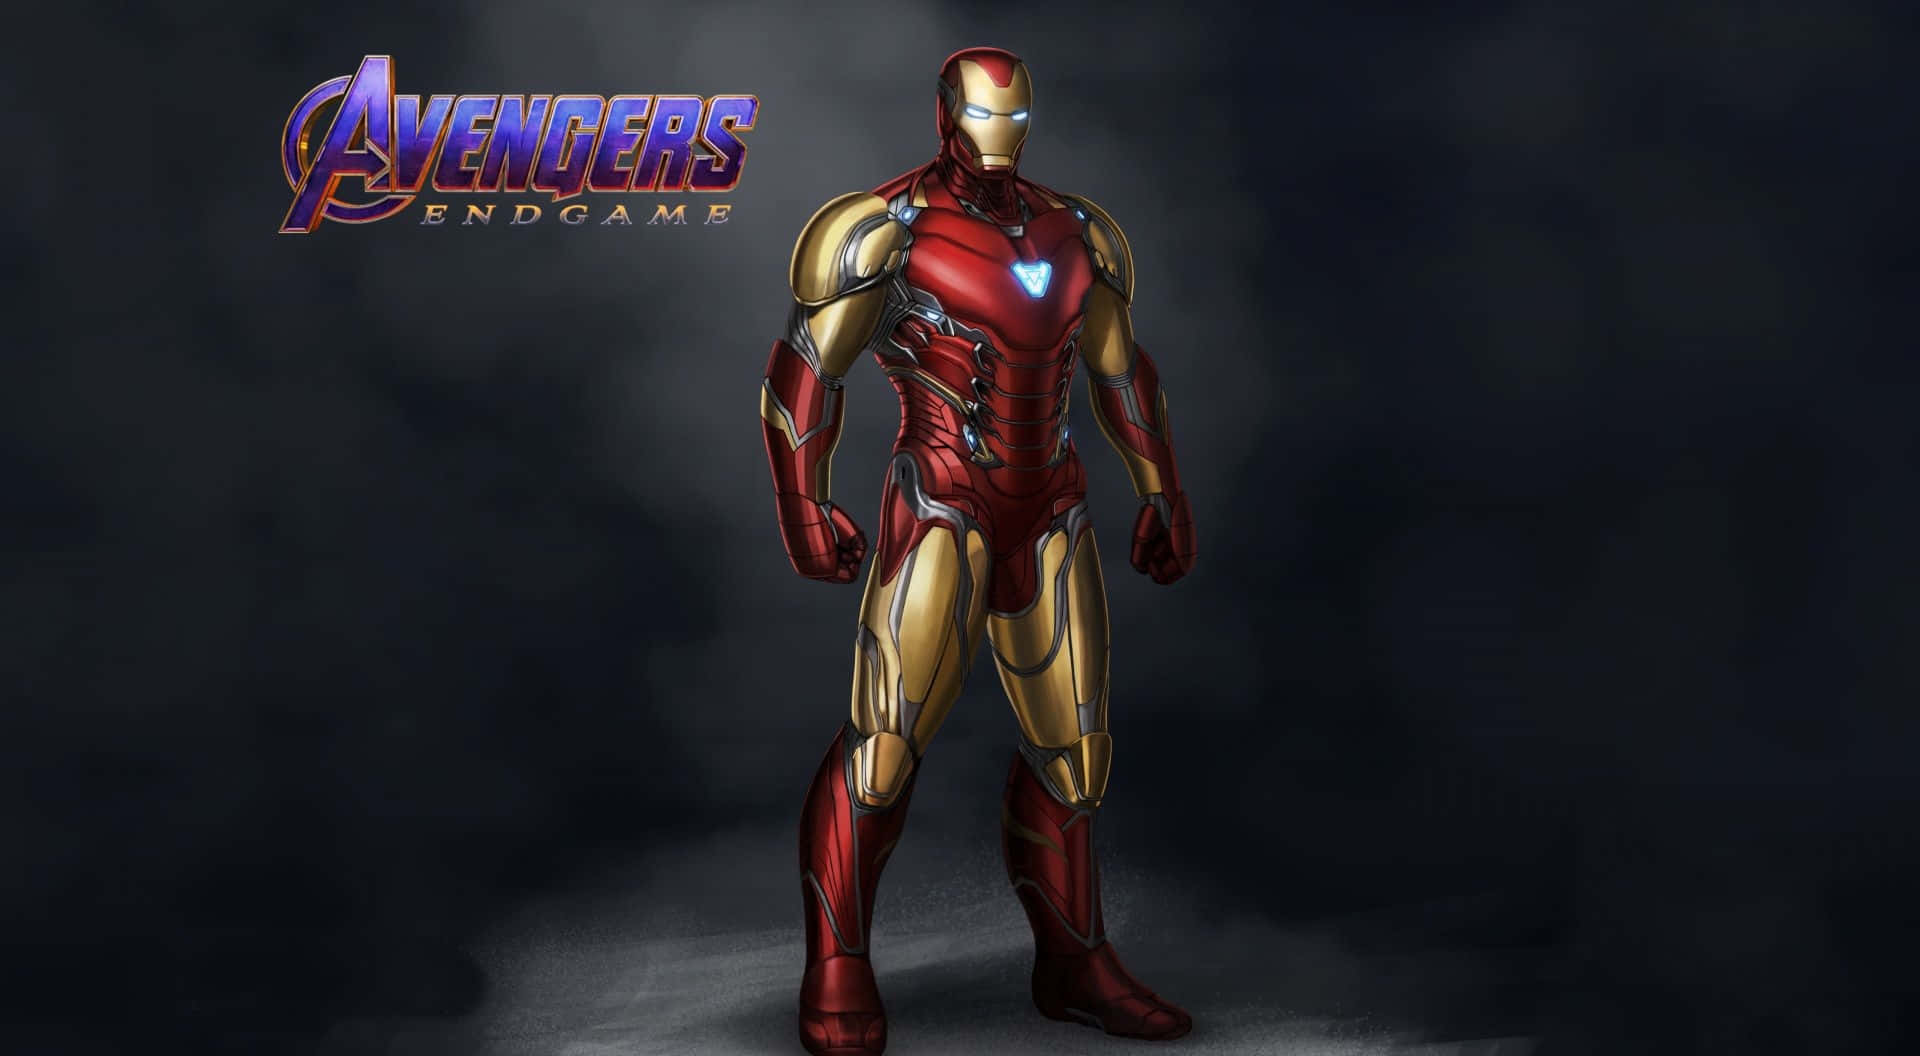 Avengers Iron Man Endgame Poster Wallpaper